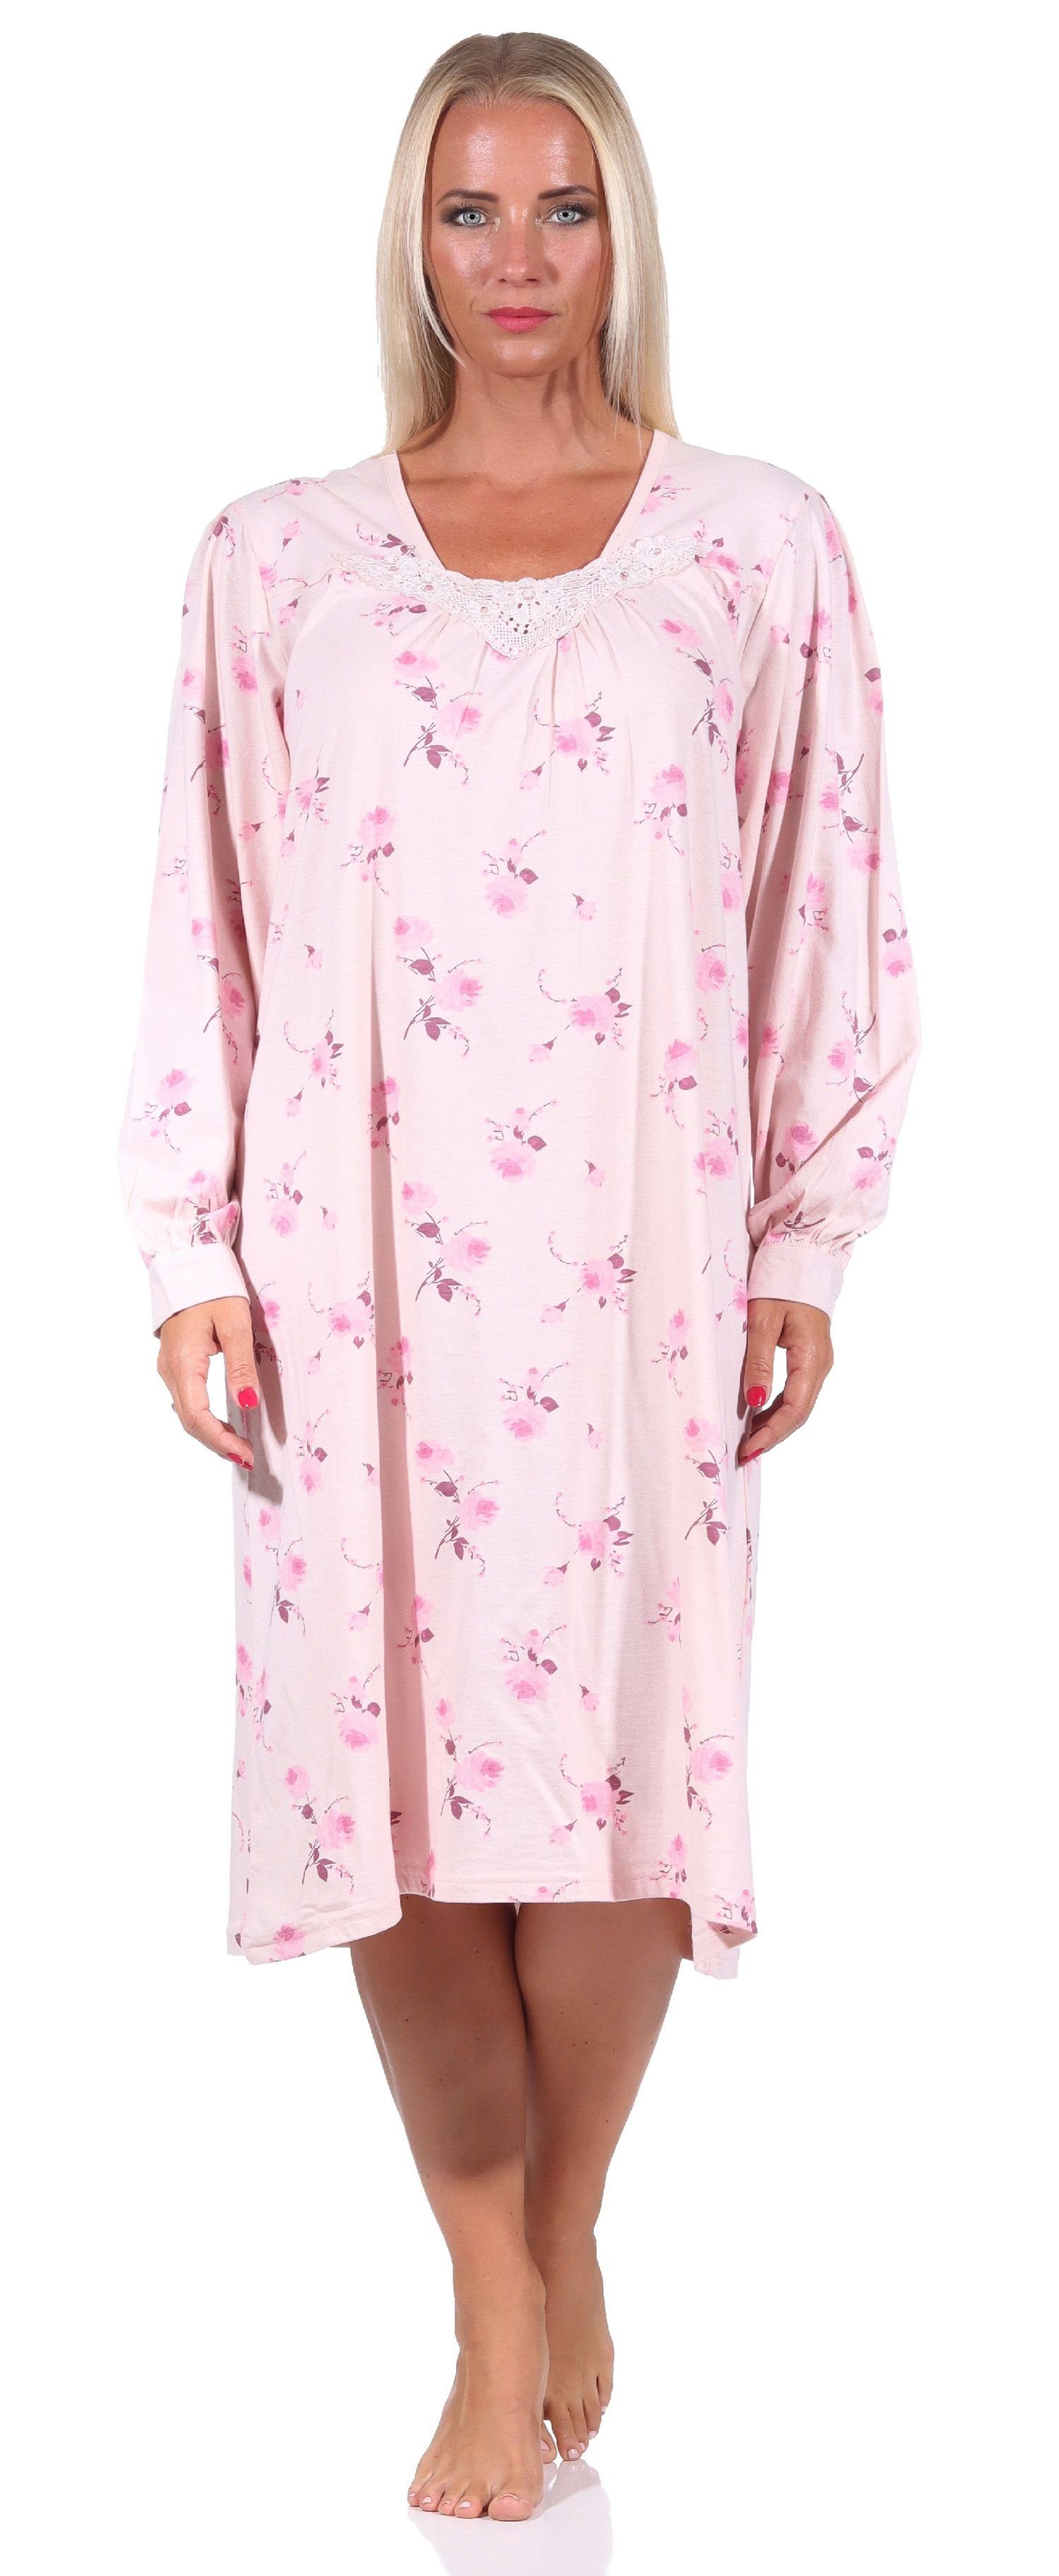 Normann Nachthemd Frauliches Damen Nachthemd mit Spitze, cm Länge, Knopfleiste am Hals rosa